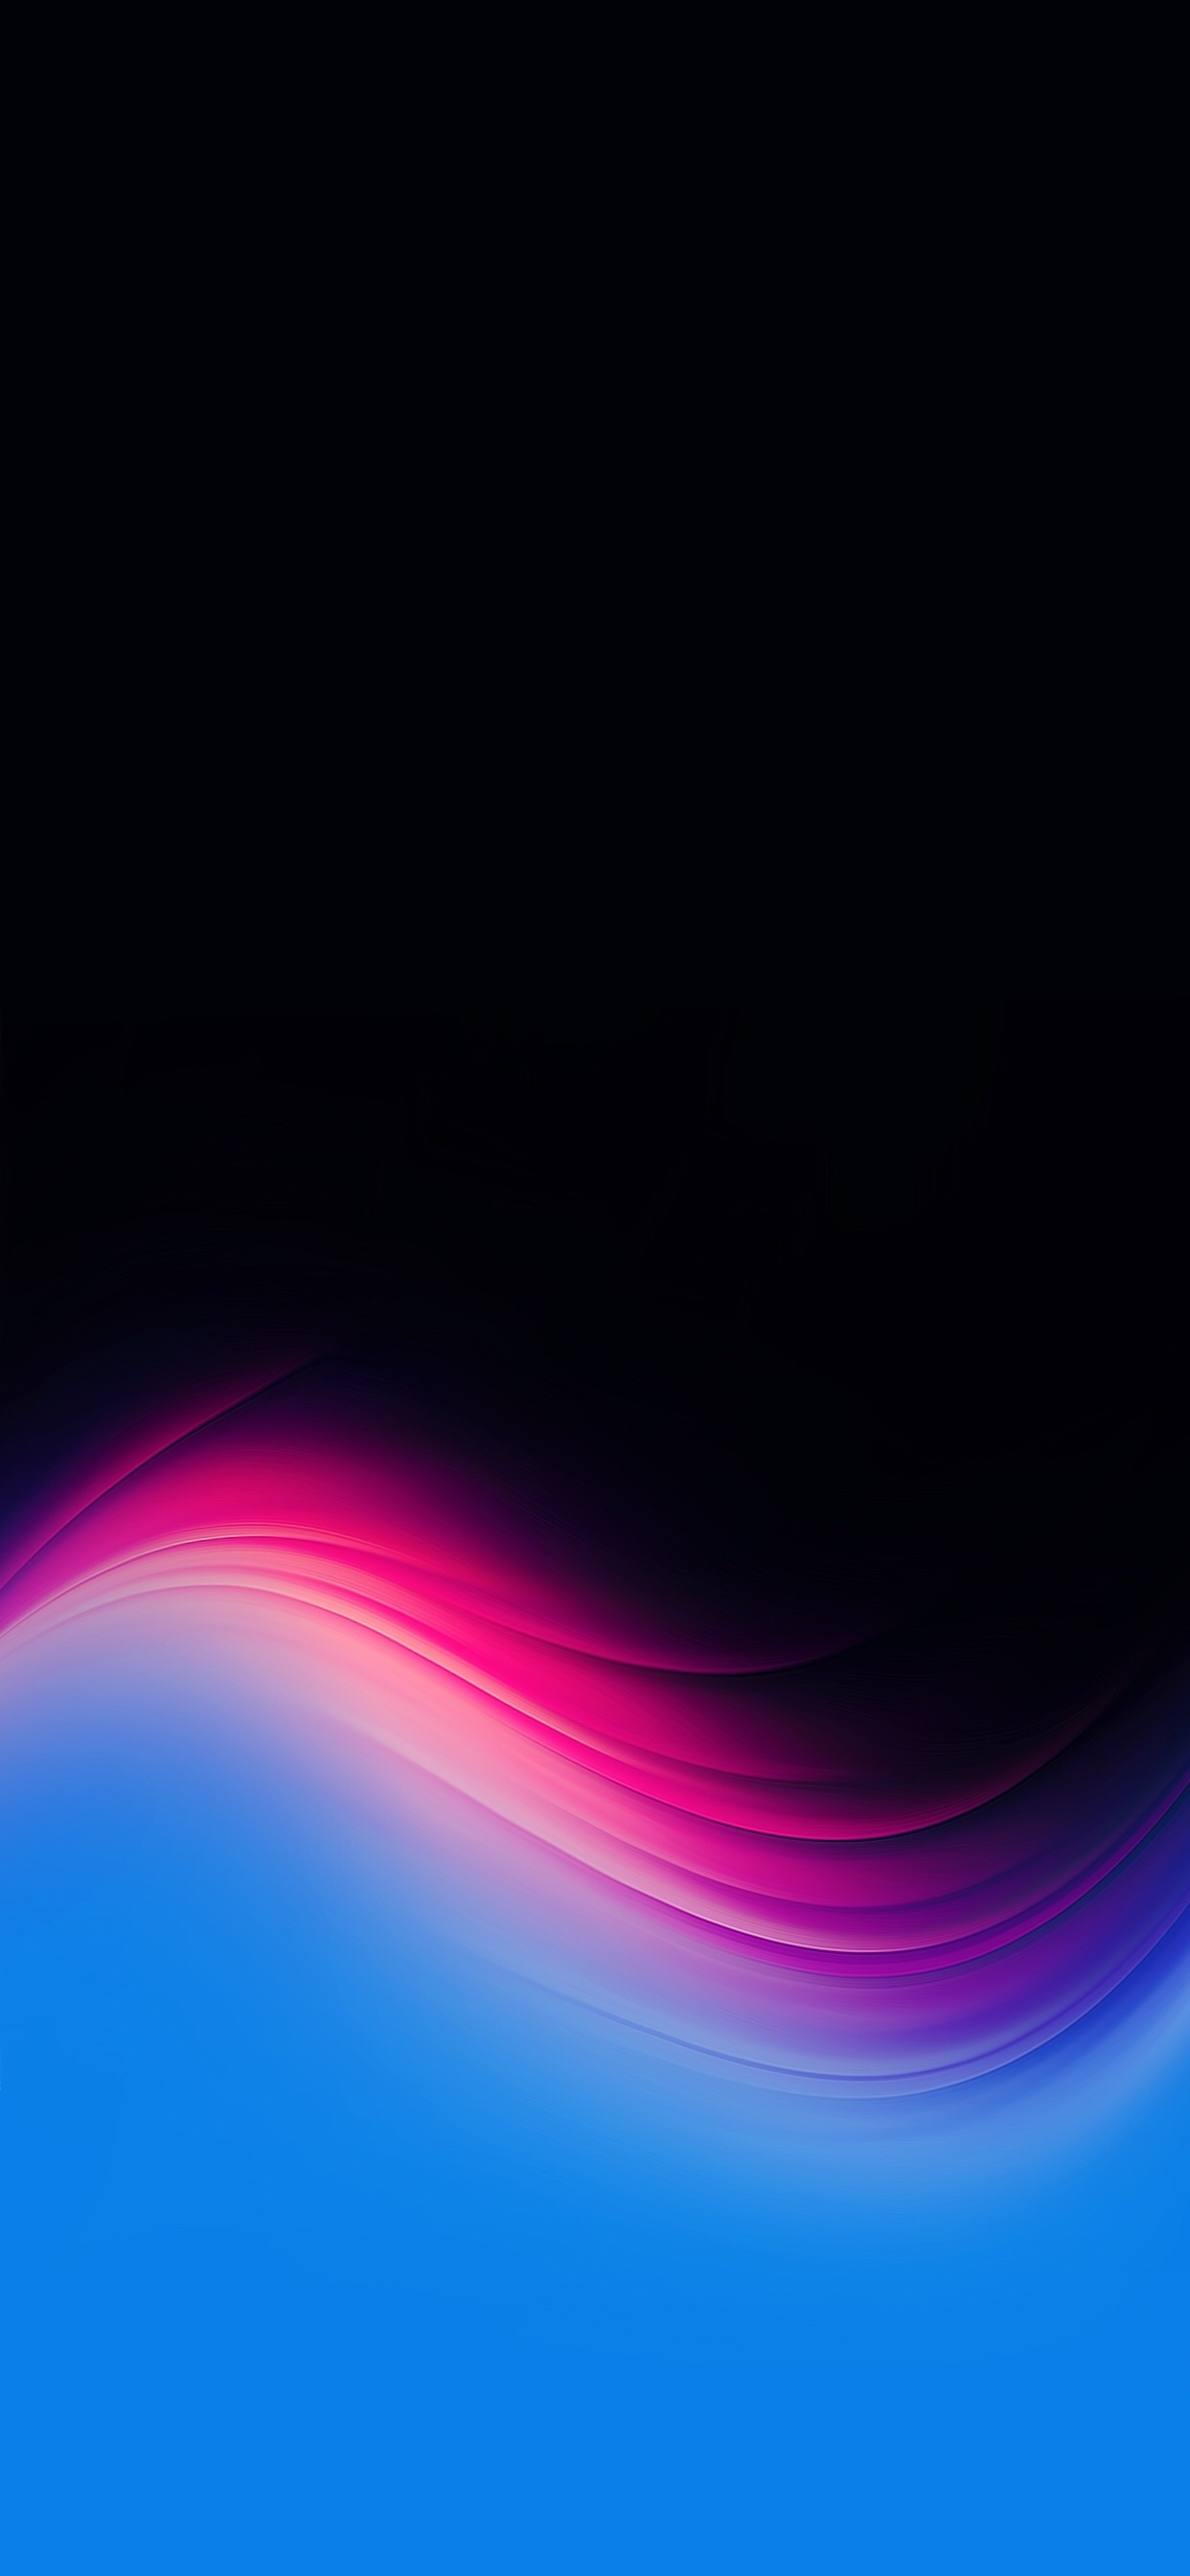 gradient iphone wallpaper,blue,black,atmosphere,violet,purple